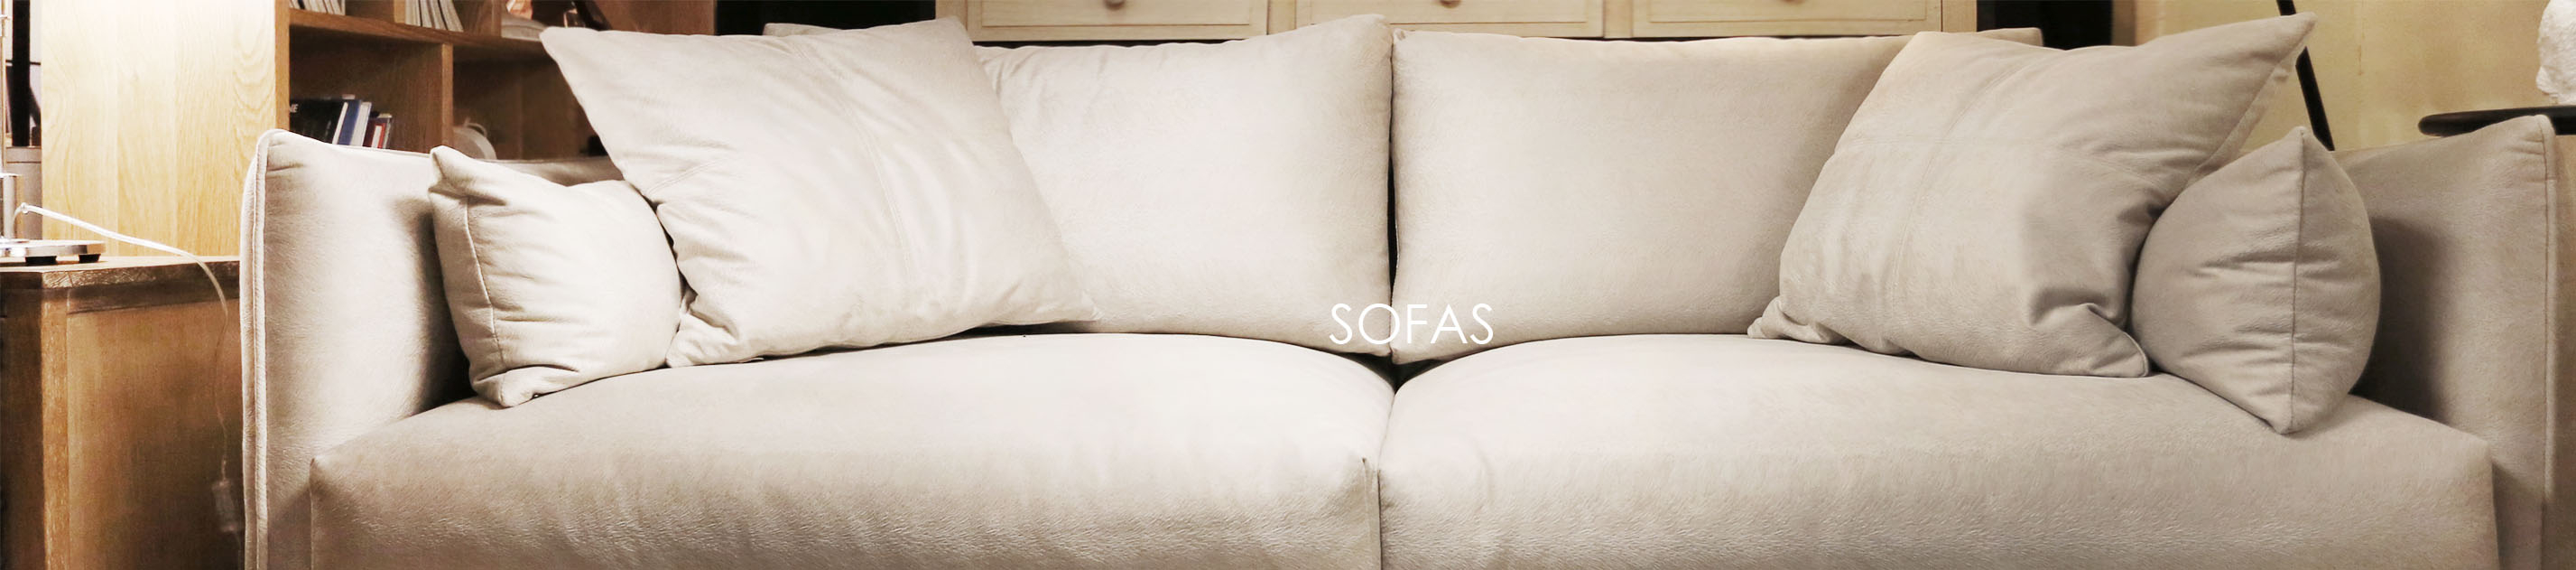 Sofas